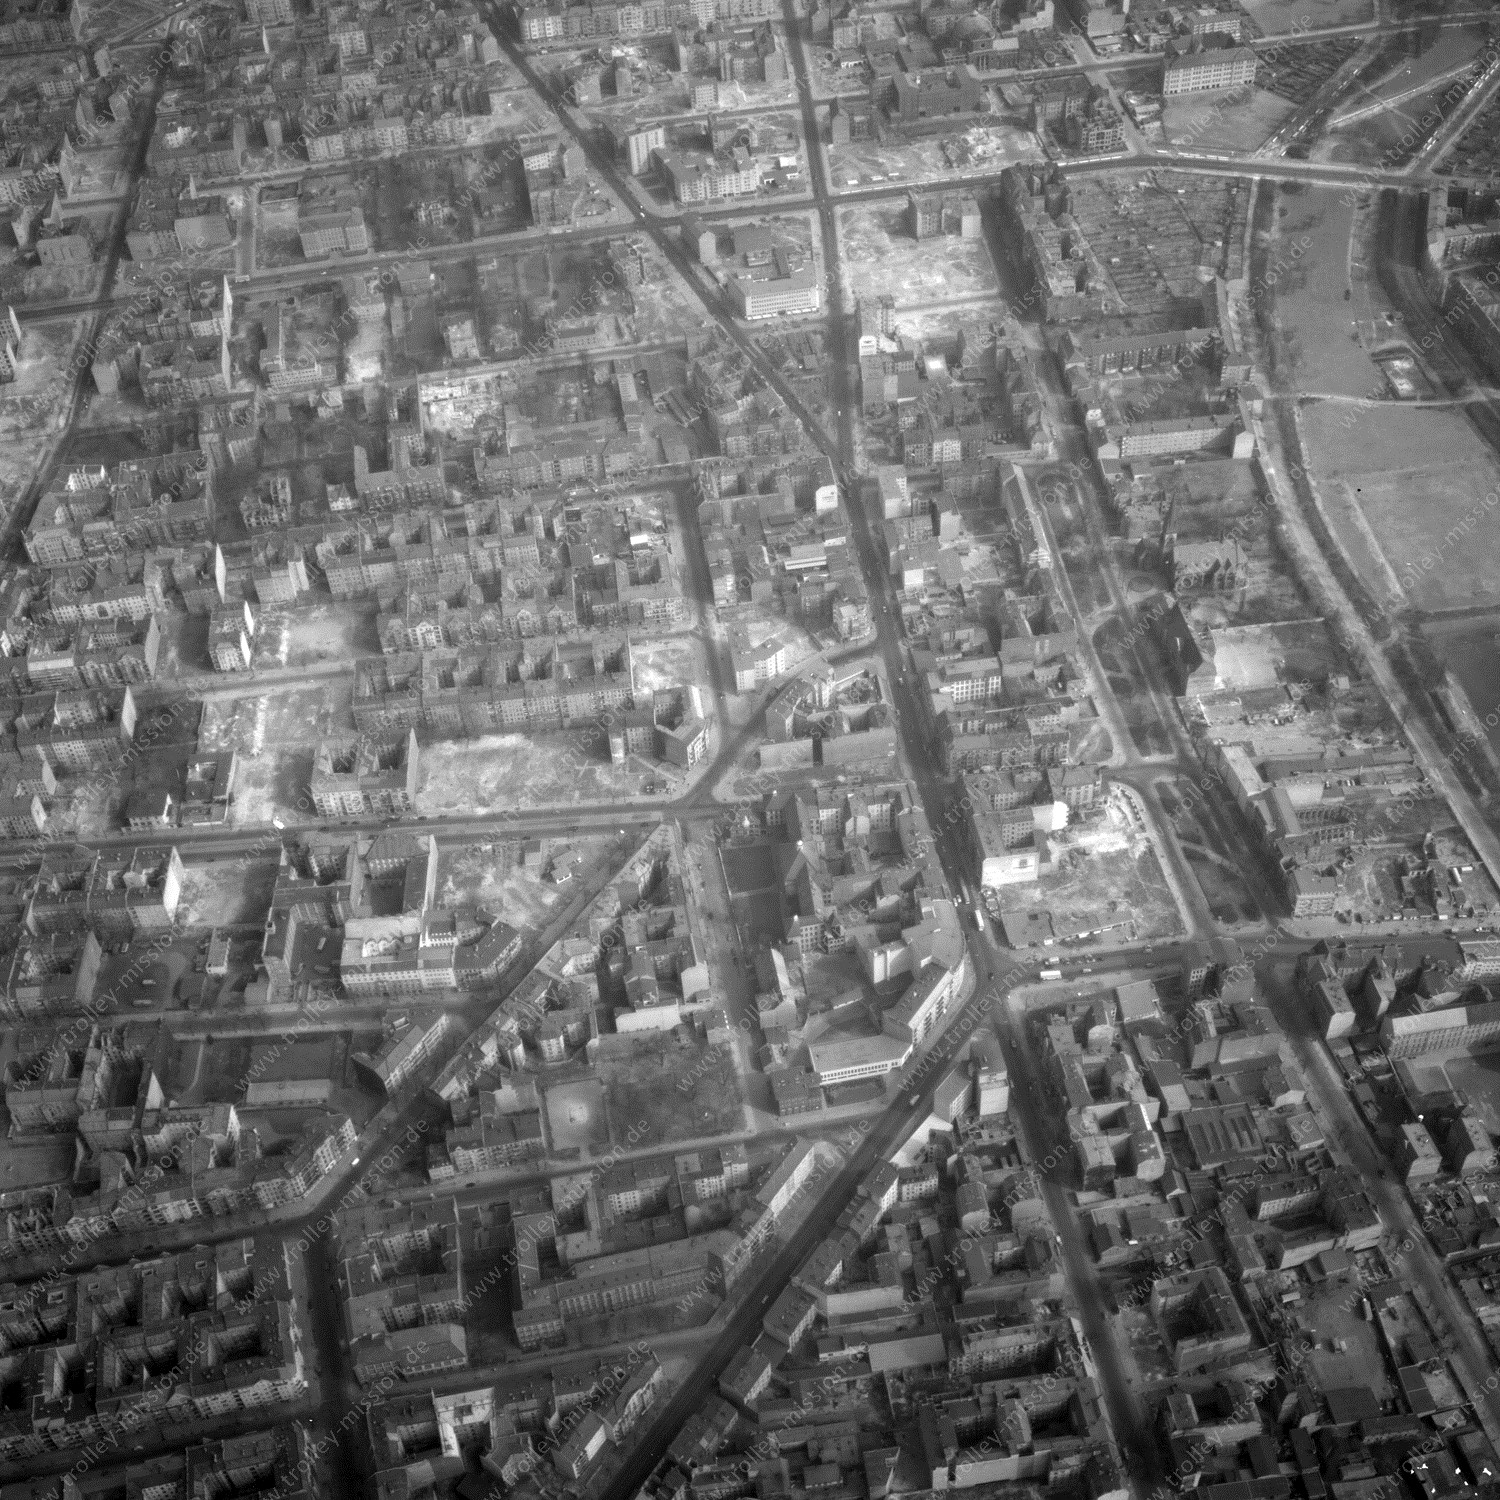 Alte Fotos und Luftbilder von Berlin - Luftbildaufnahme Nr. 03 - Historische Luftaufnahmen von West-Berlin aus dem Jahr 1954 - Flugstrecke Delta